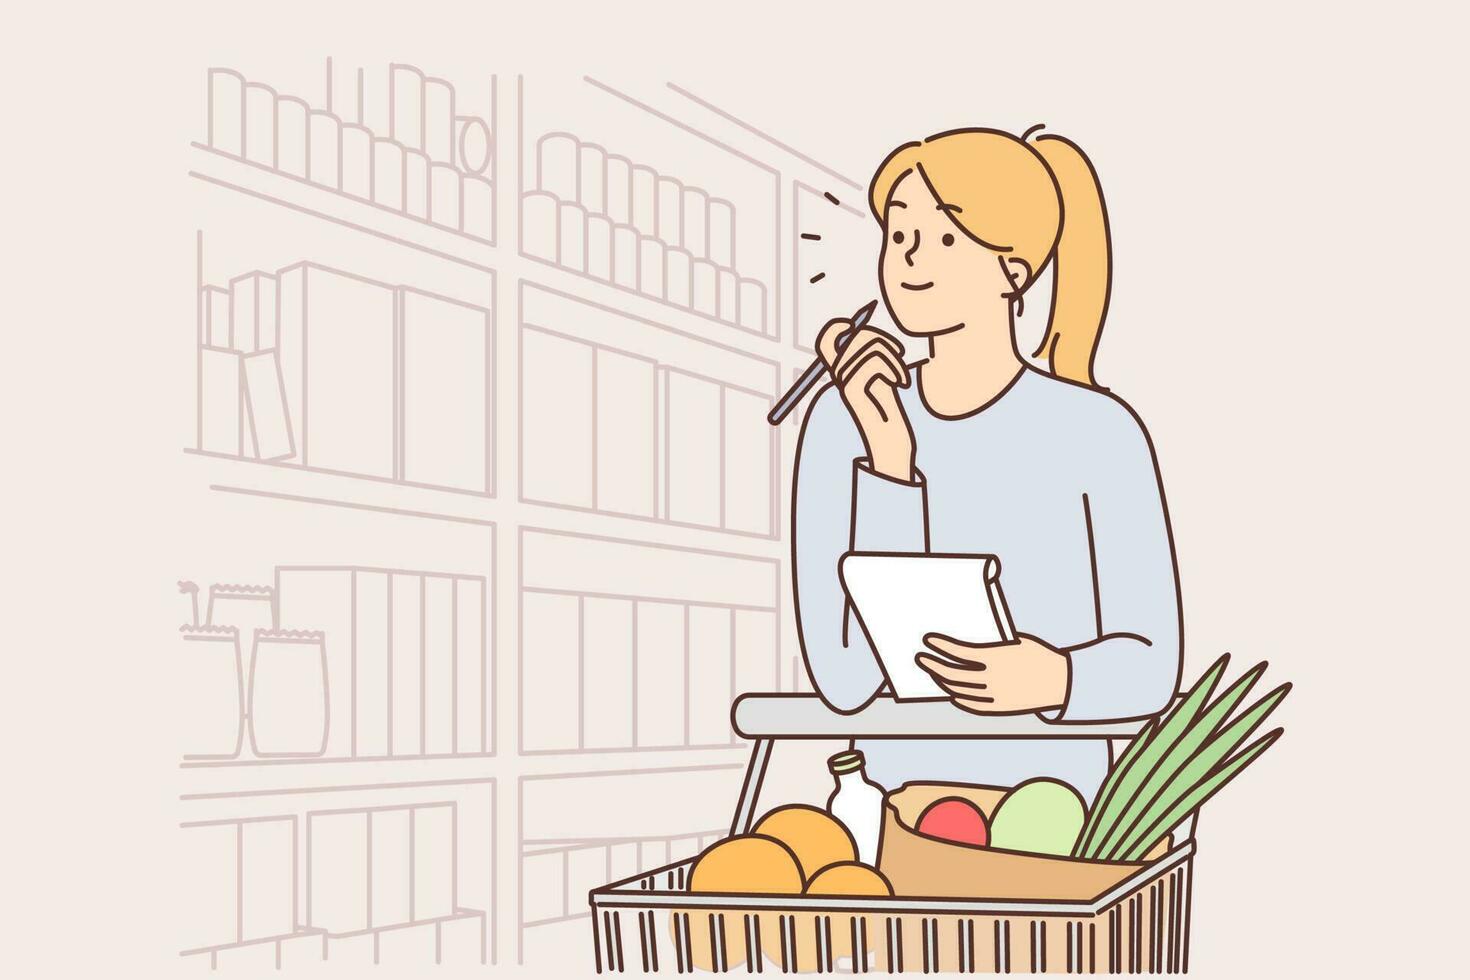 vrouw wandelingen in de omgeving van supermarkt met kar gevulde met groenten en houdt checklist in handen naar tellen calorieën of prijzen. meisje is boodschappen doen in supermarkt buying voedsel en gezond biologisch voedsel vector